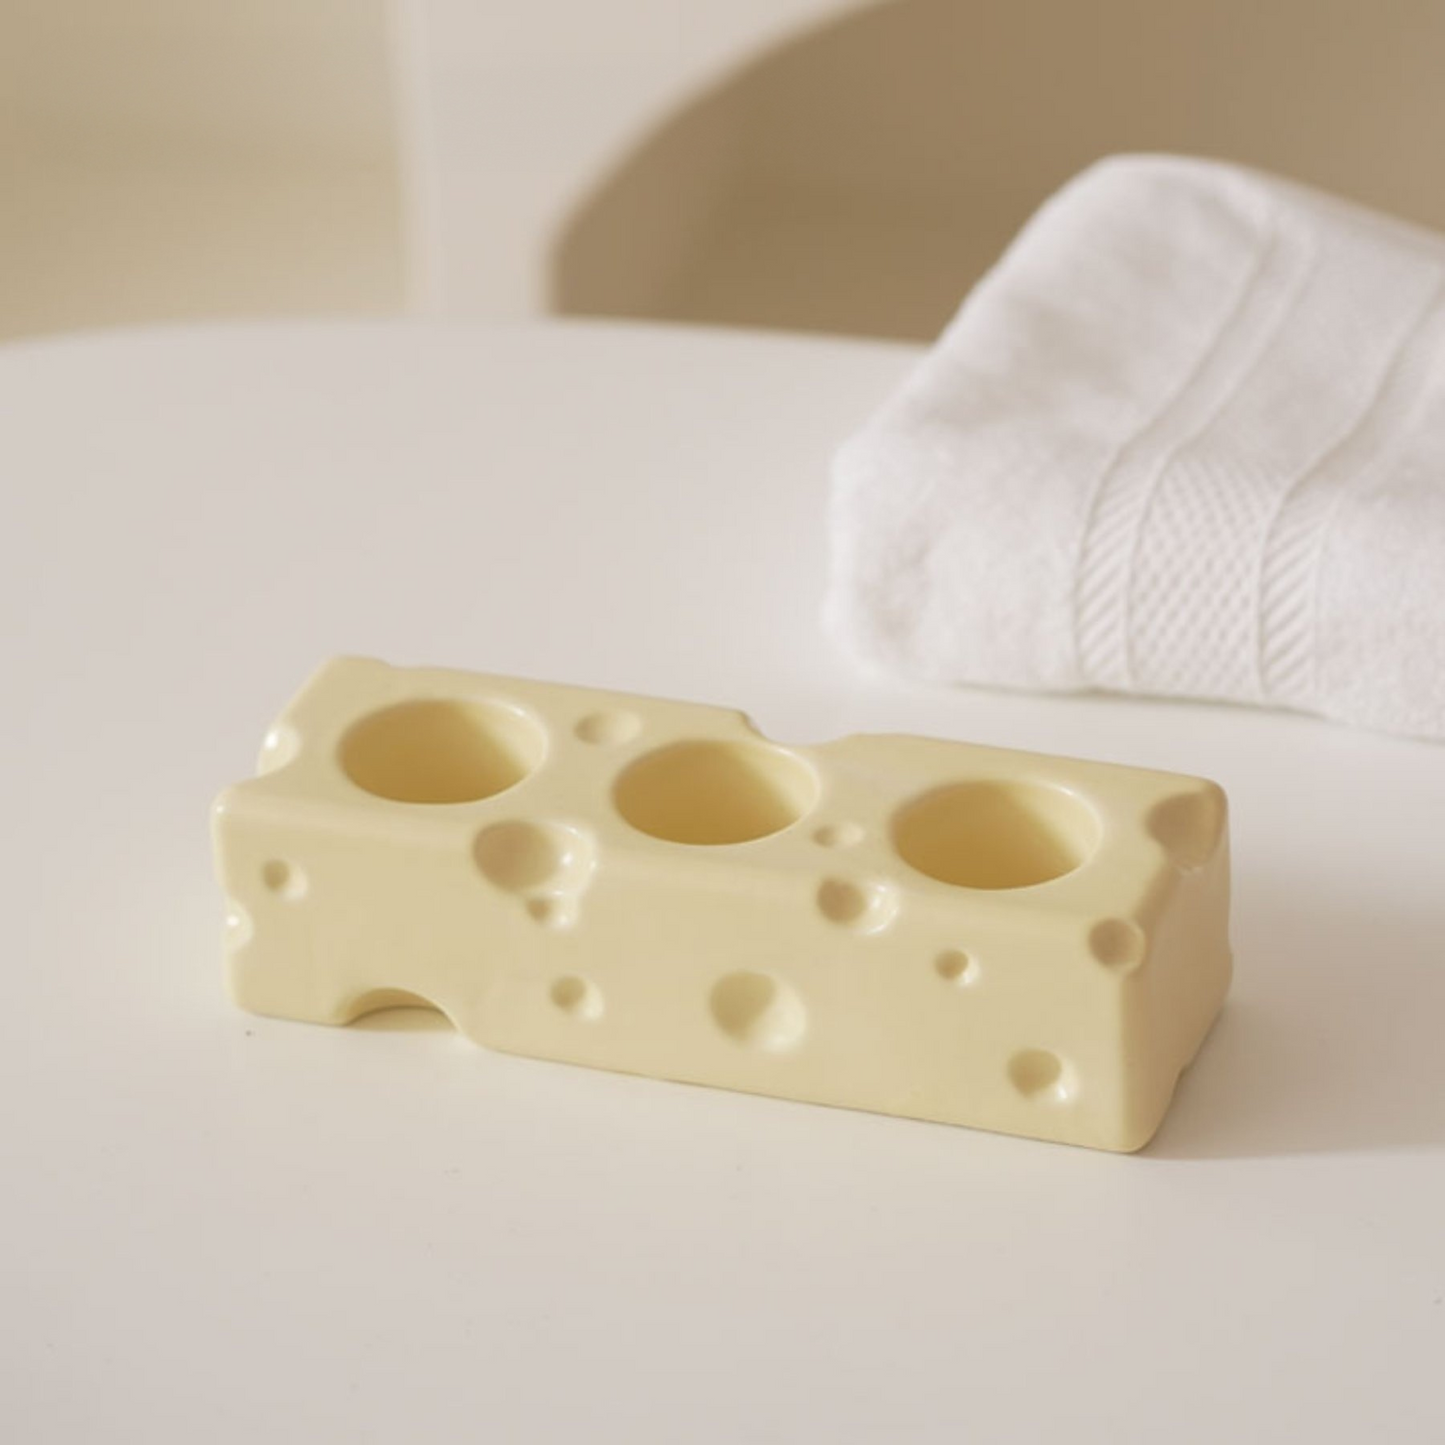 Cheese-inspired Ceramic Toothbrush Holder